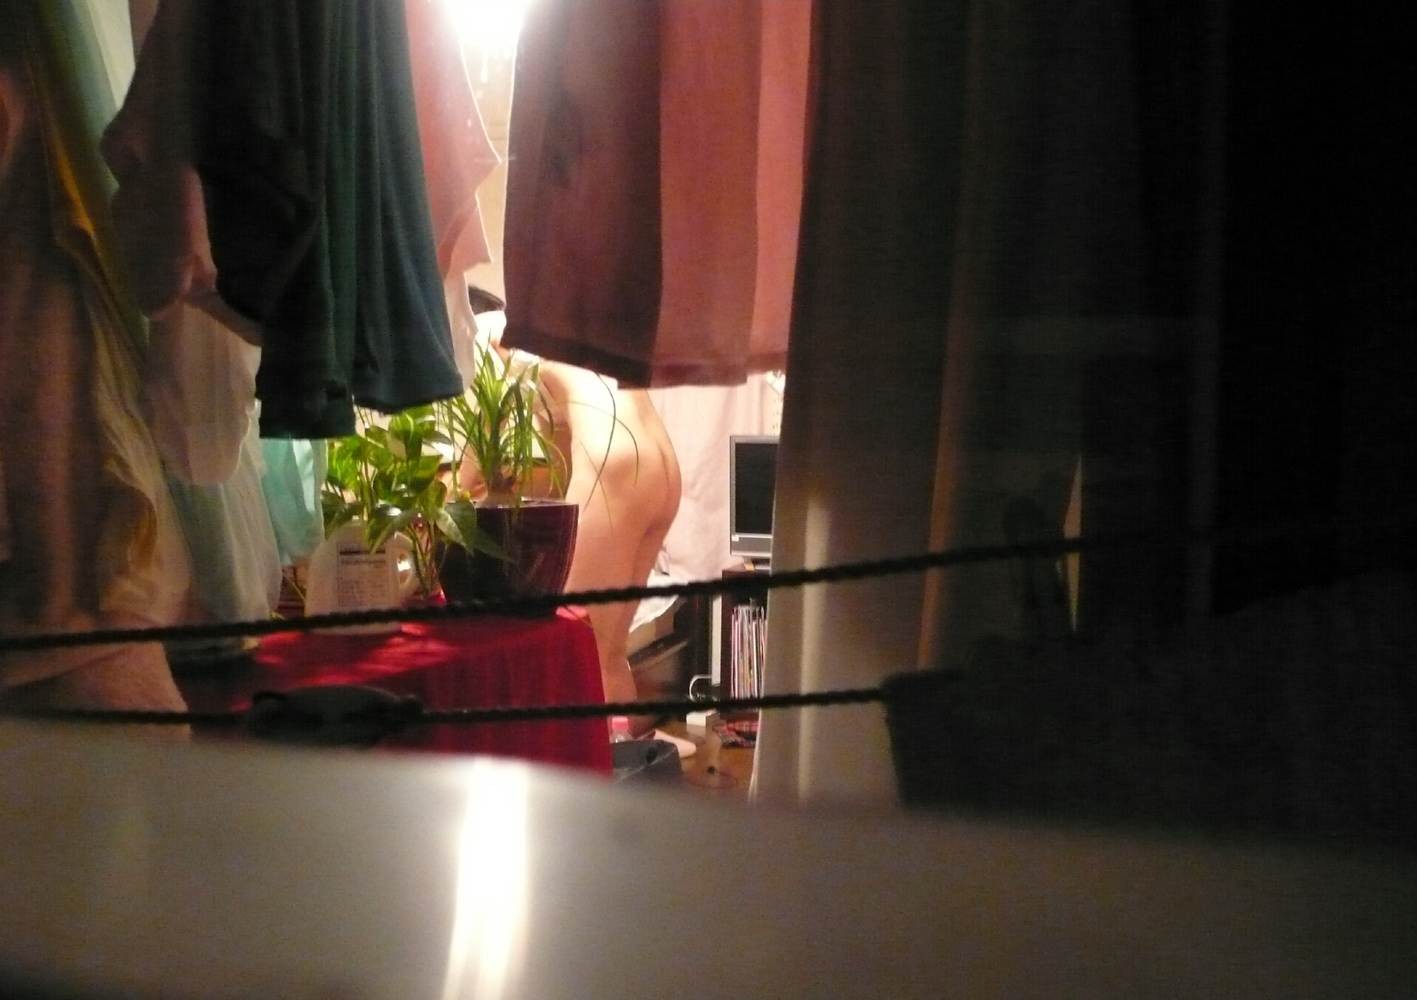 窓からこっそり盗み撮りした隣のお姉さんの裸でオナル007